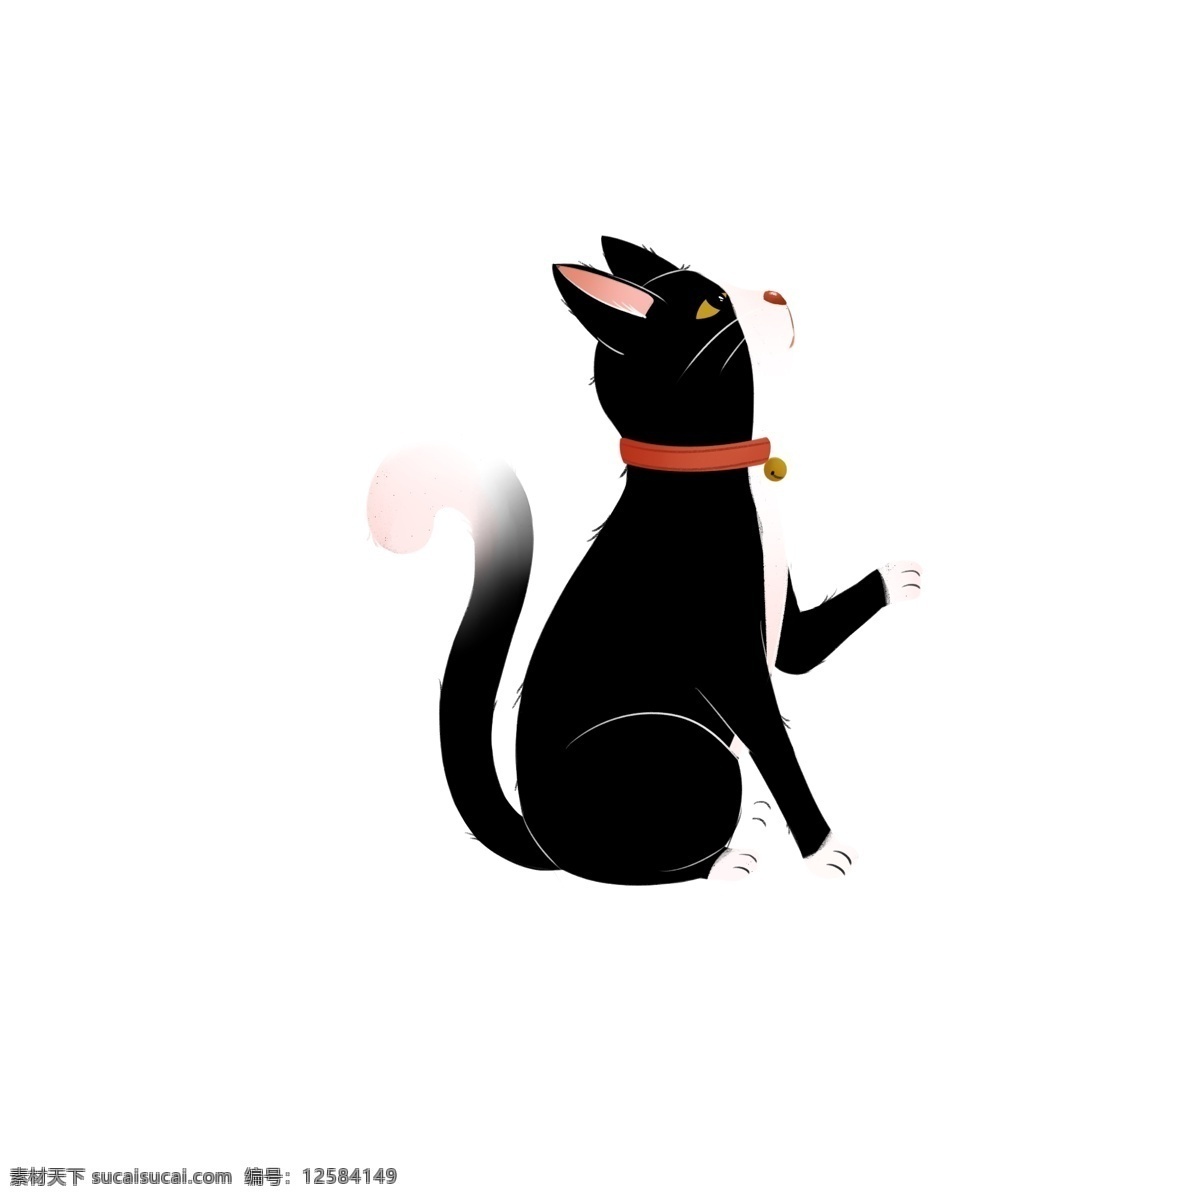 卡通 只 可爱 小 黑猫 动物 萌宠 插画 小黑猫 猫咪